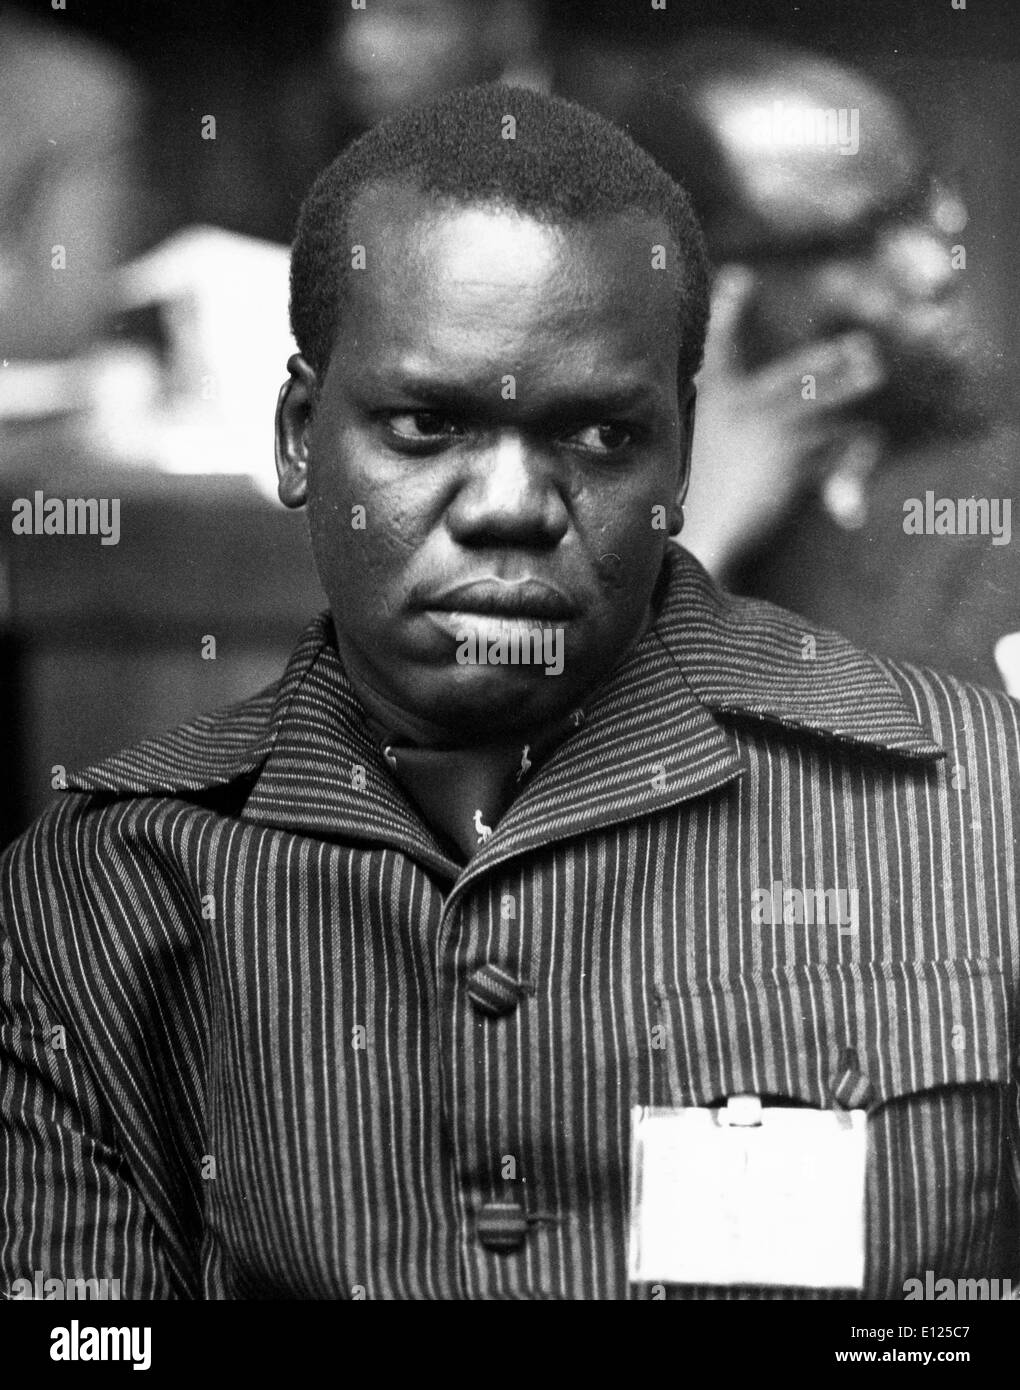 Maggio 21, 1992; Kampala, Uganda; Lt. Col. JUMA ORIS ABDALLA, Ministro per gli affari esteri. Foto Stock